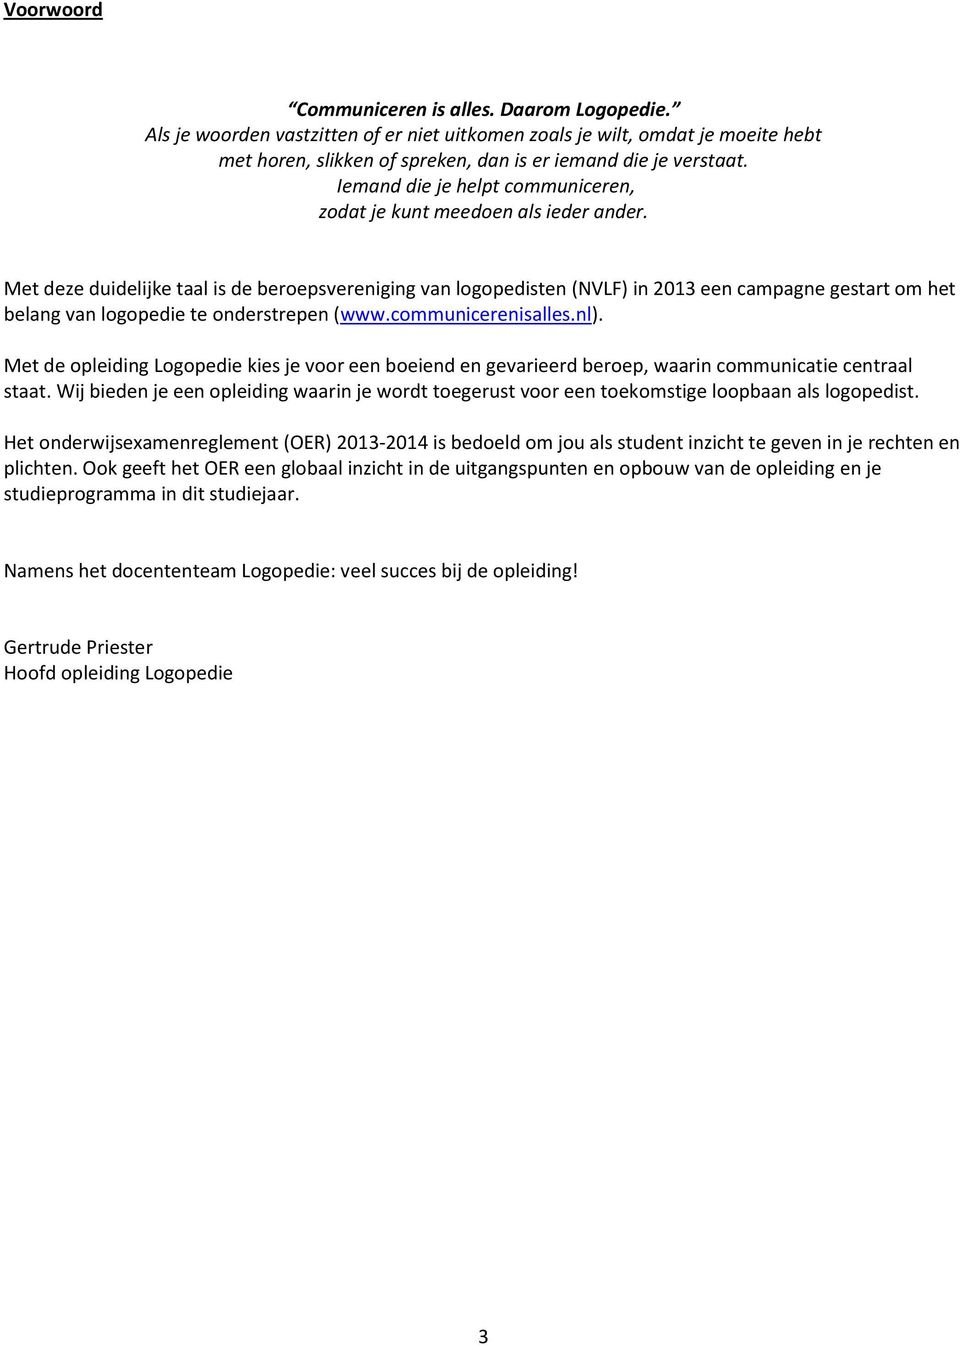 Met deze duidelijke taal is de beroepsvereniging van logopedisten (NVLF) in 2013 een campagne gestart om het belang van logopedie te onderstrepen (www.communicerenisalles.nl).